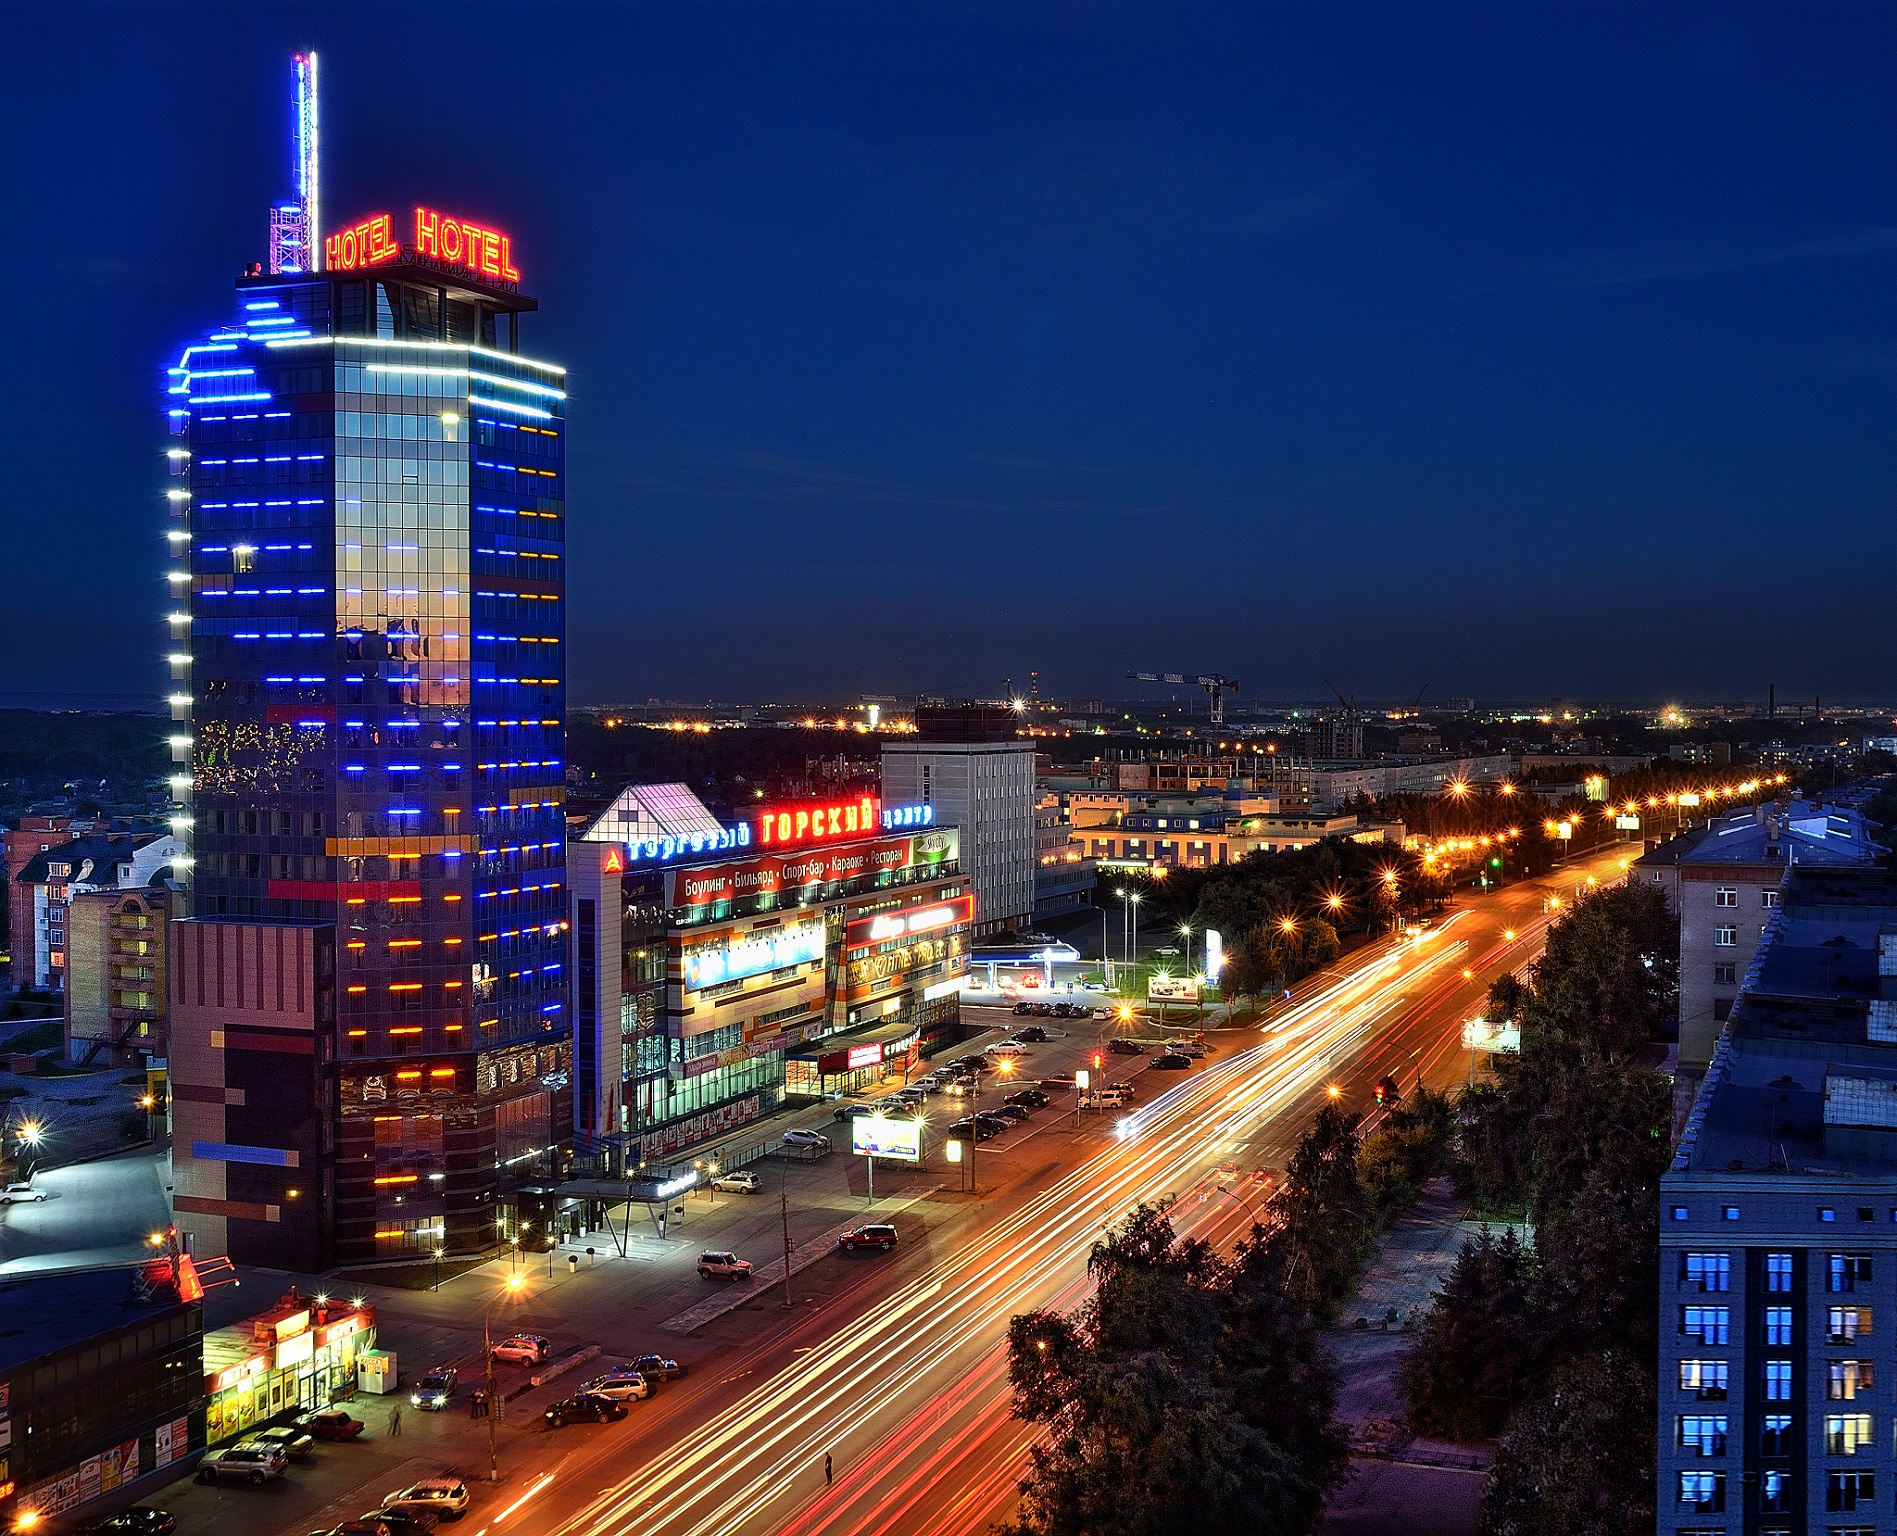 Посетители Gorskiy city hotel восхищаются президентским люксом — 400 квадратных метров и панорамный вид с террасы 21-го этажа